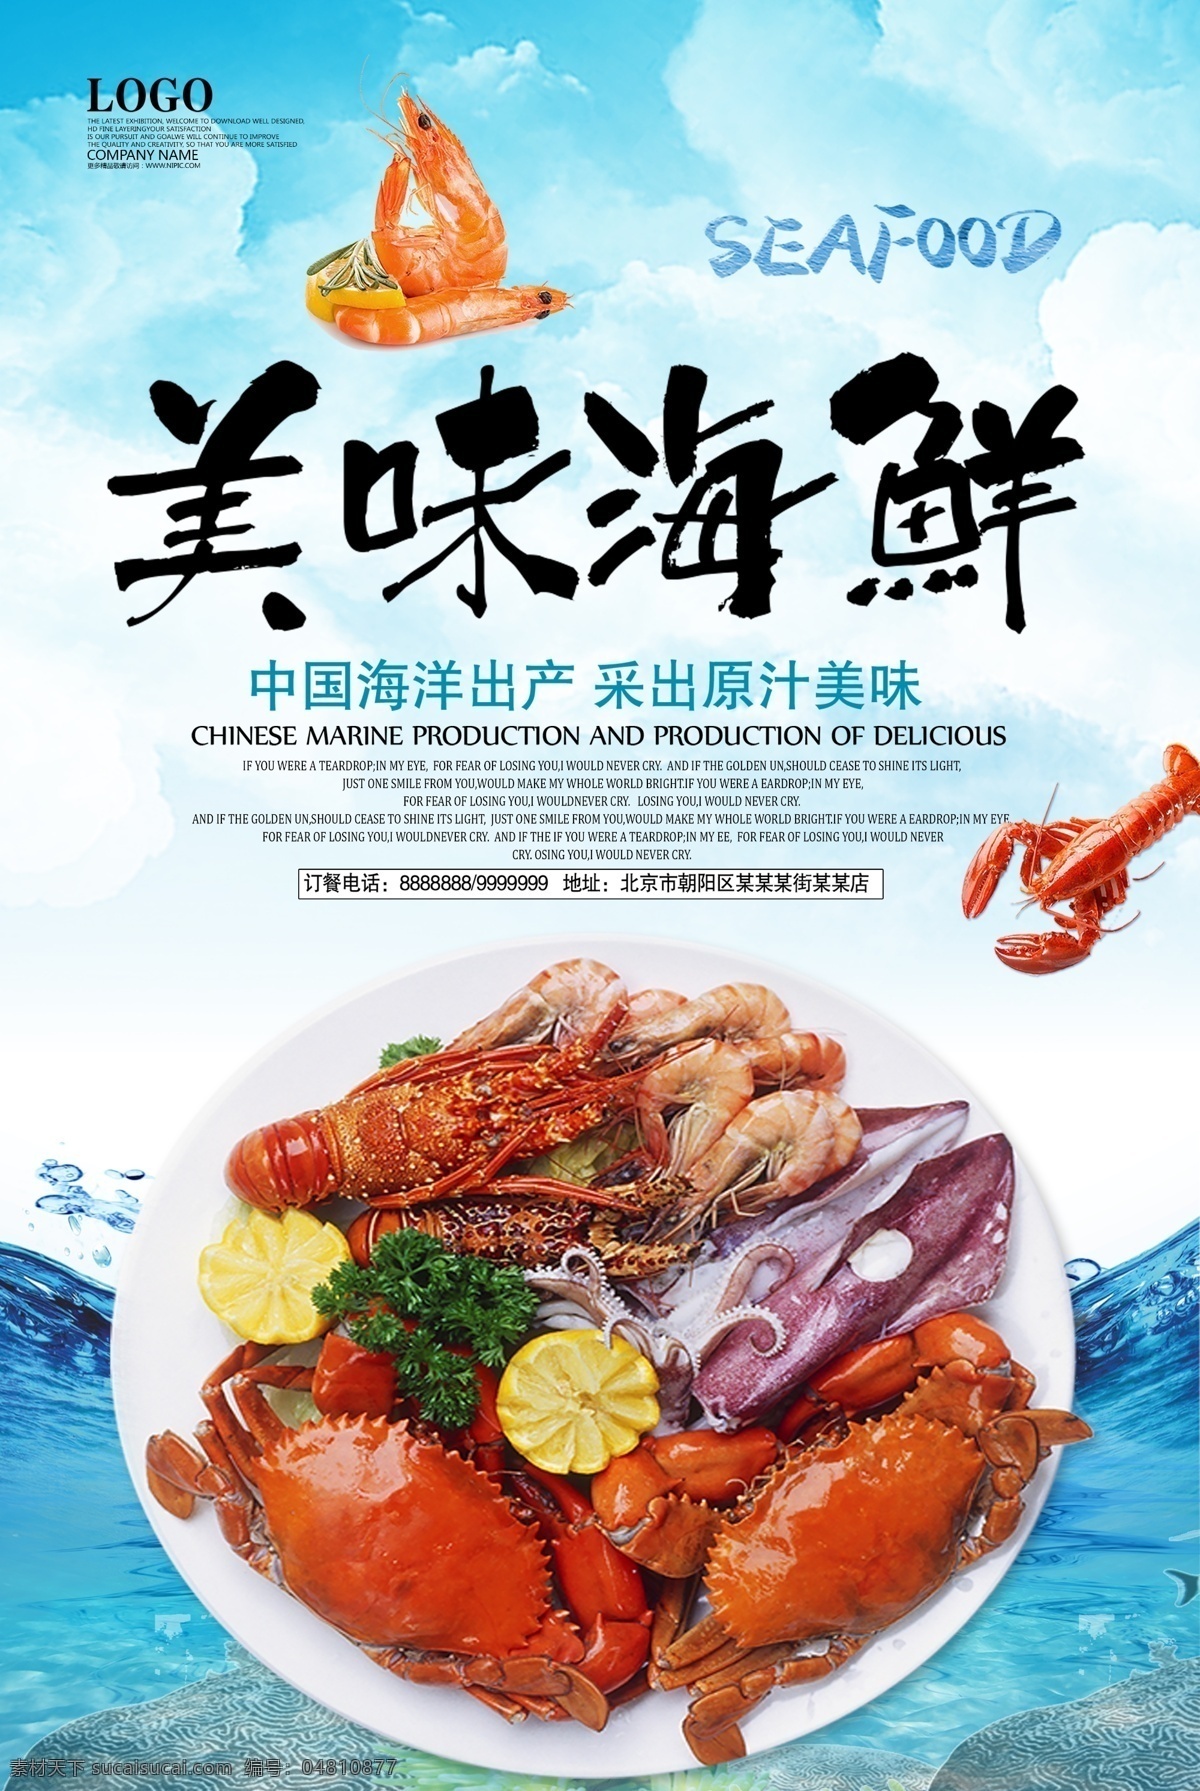 美味 海鲜 美味海鲜 精品海鲜 小龙虾 海鲜产品 海鲜宣传彩页 海鲜图片 分层